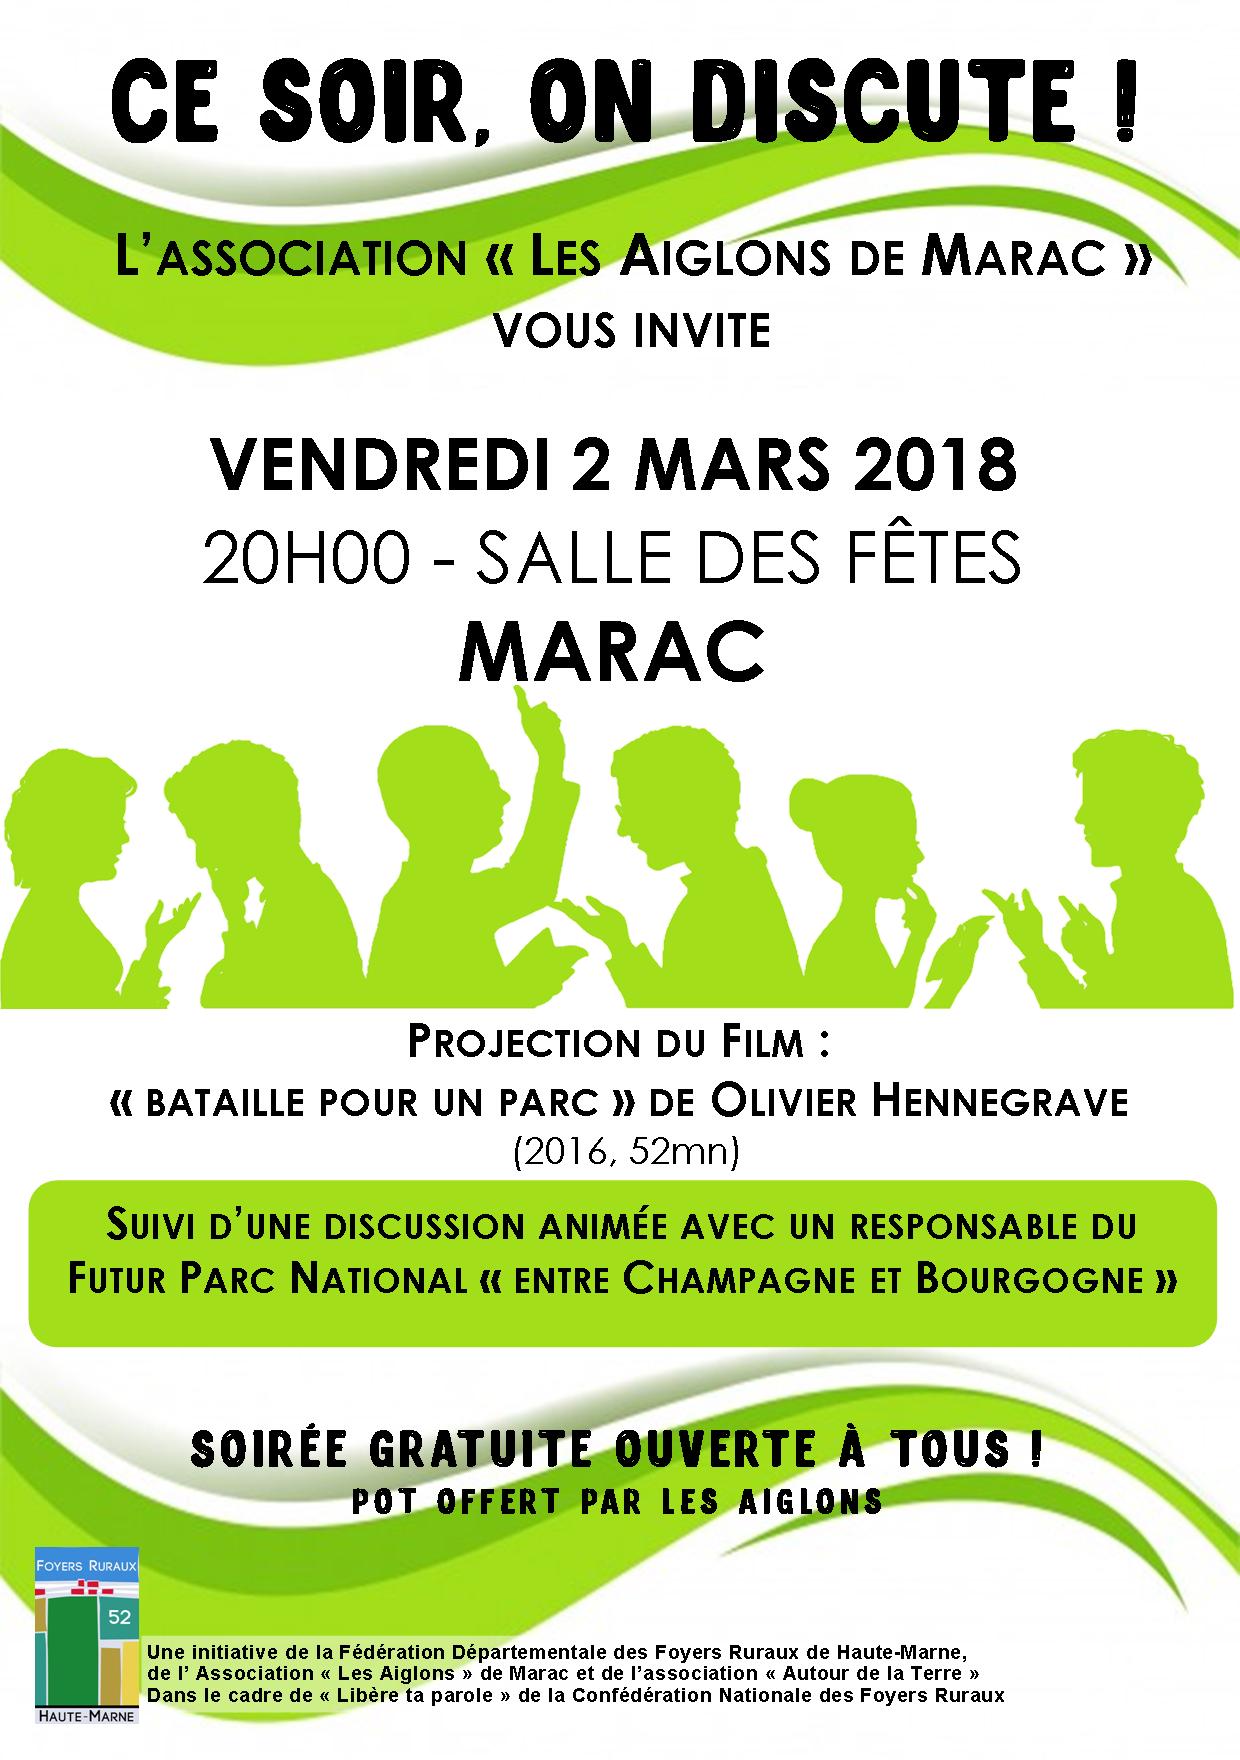 tract_ce_soir_on_discute_marac